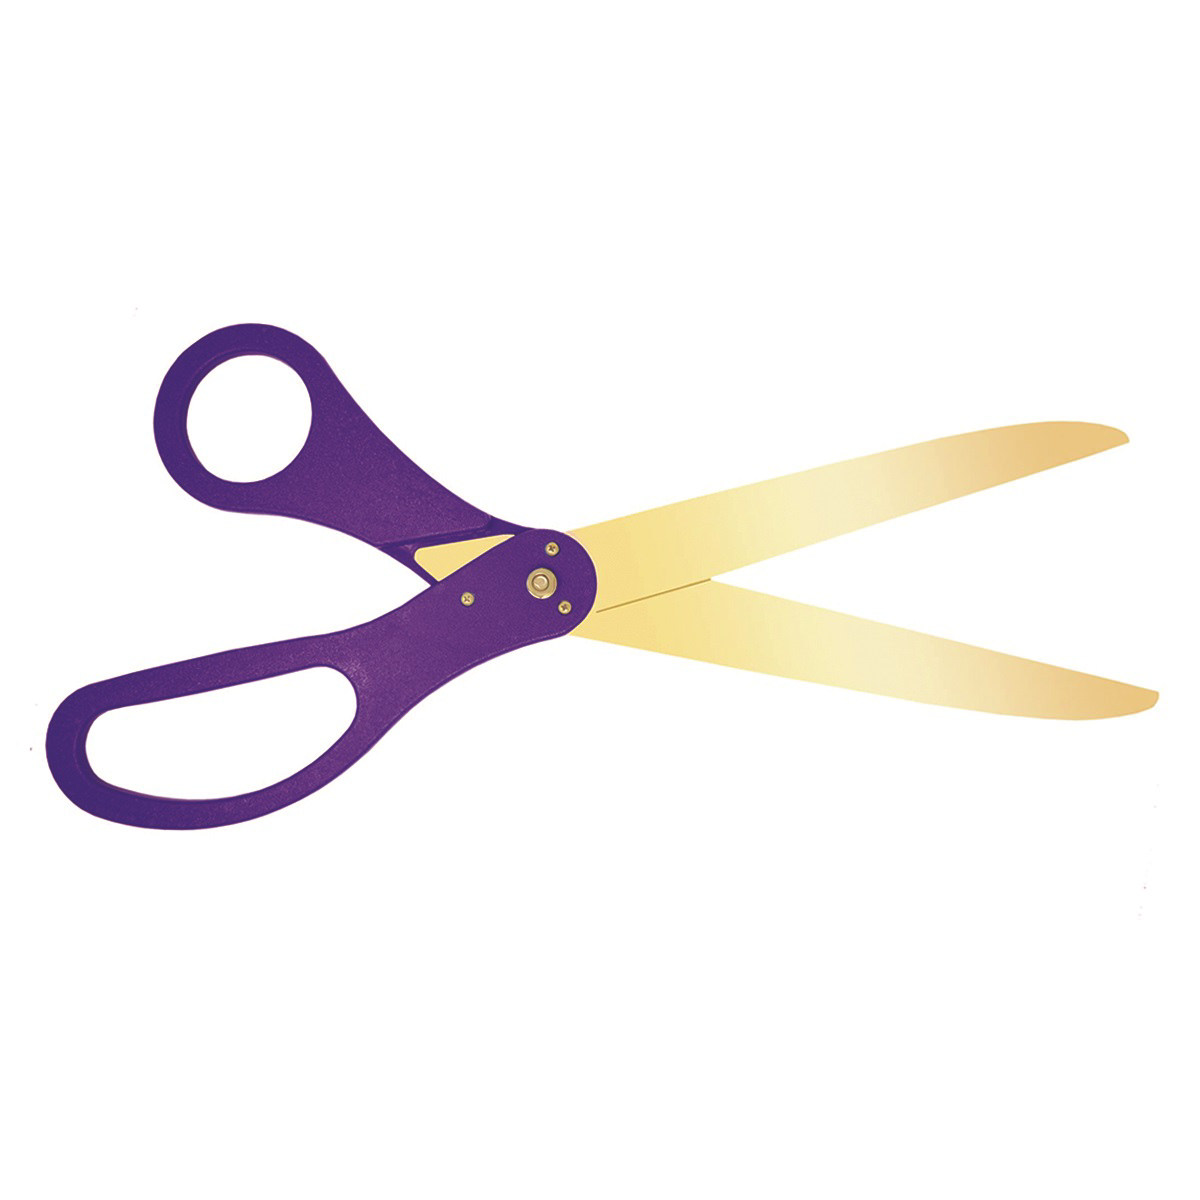 https://www.ceremonialsupplies.com/images/thumbs/0002502_ceremonial-golden-blade-ribbon-cutting-scissors.jpeg